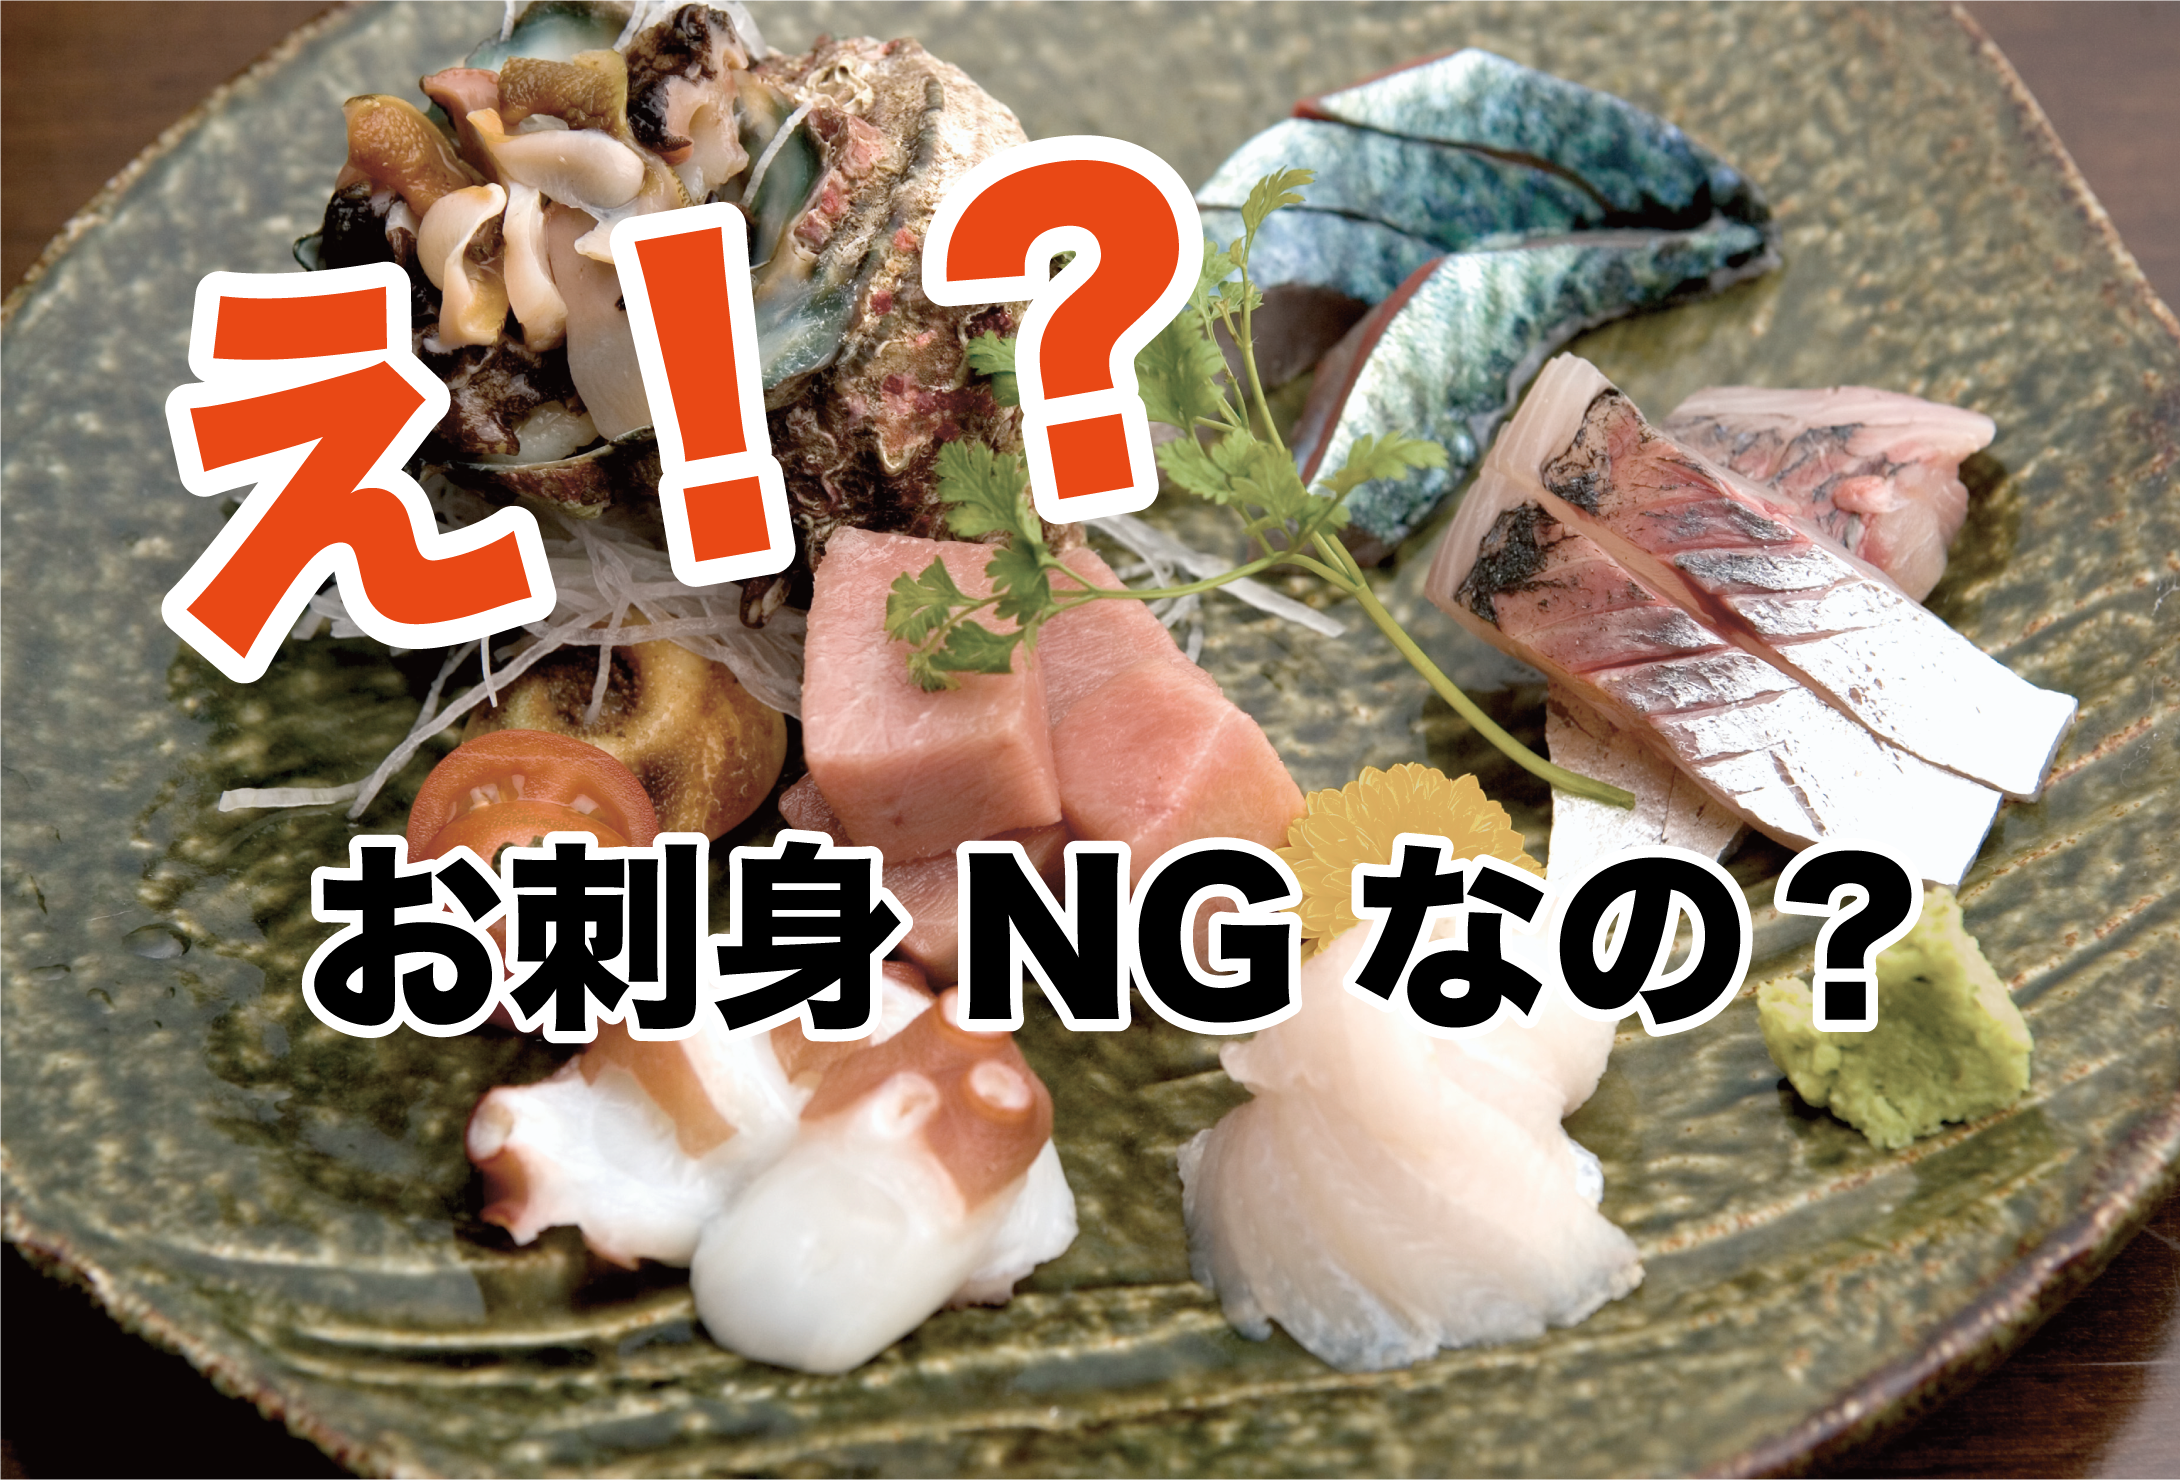 刺身は食べられない 福岡に来る前に知っておきたい3つの屋台事情 はたらくひとのコンテンツ